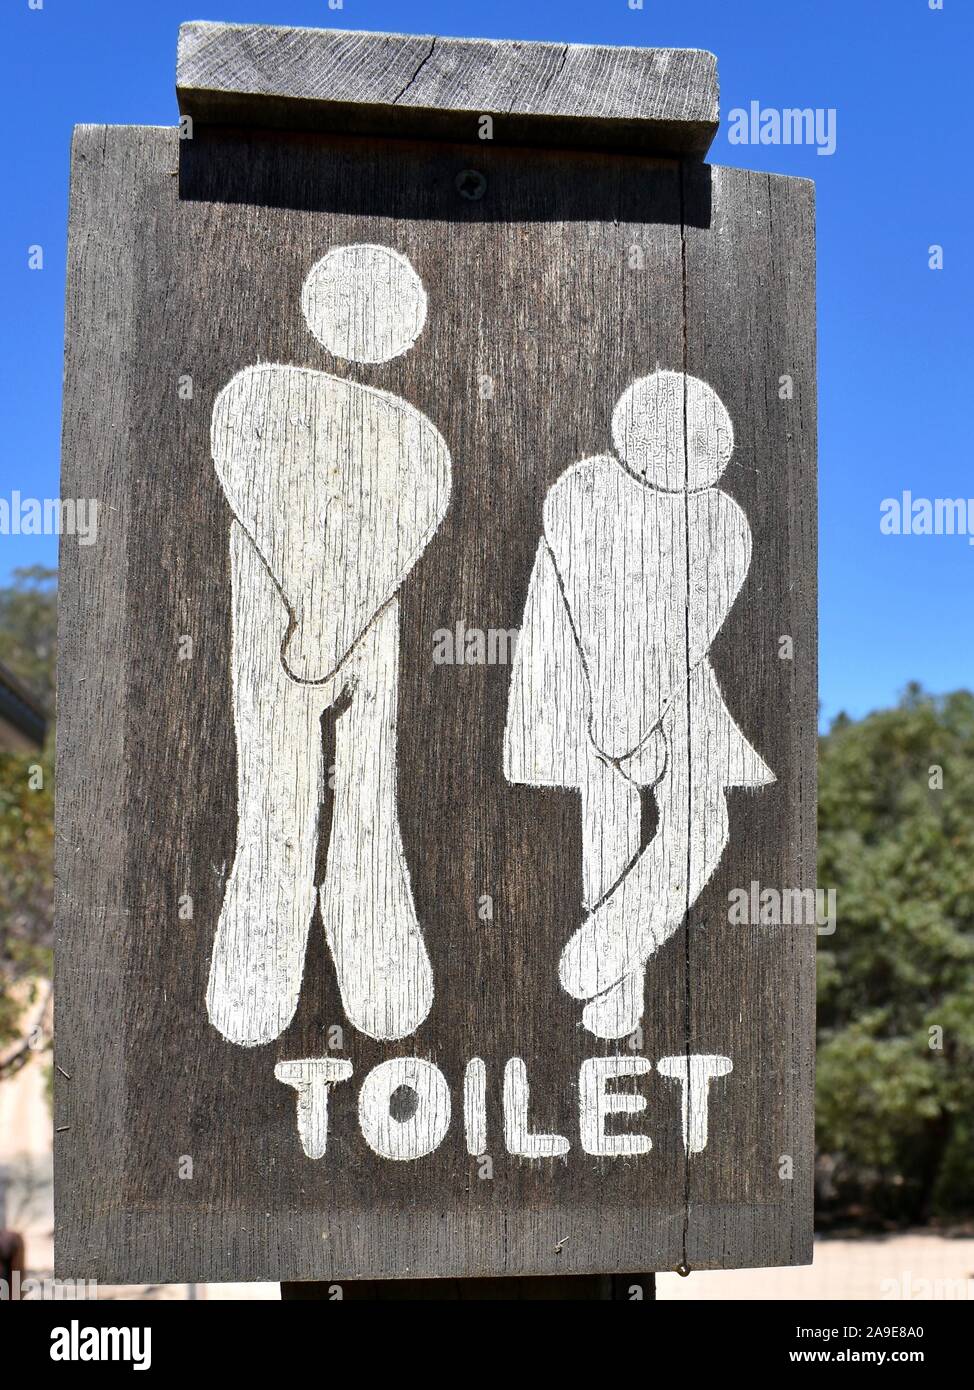 Une intéressante représentation d'un homme et une femme sur une toilette sign Banque D'Images